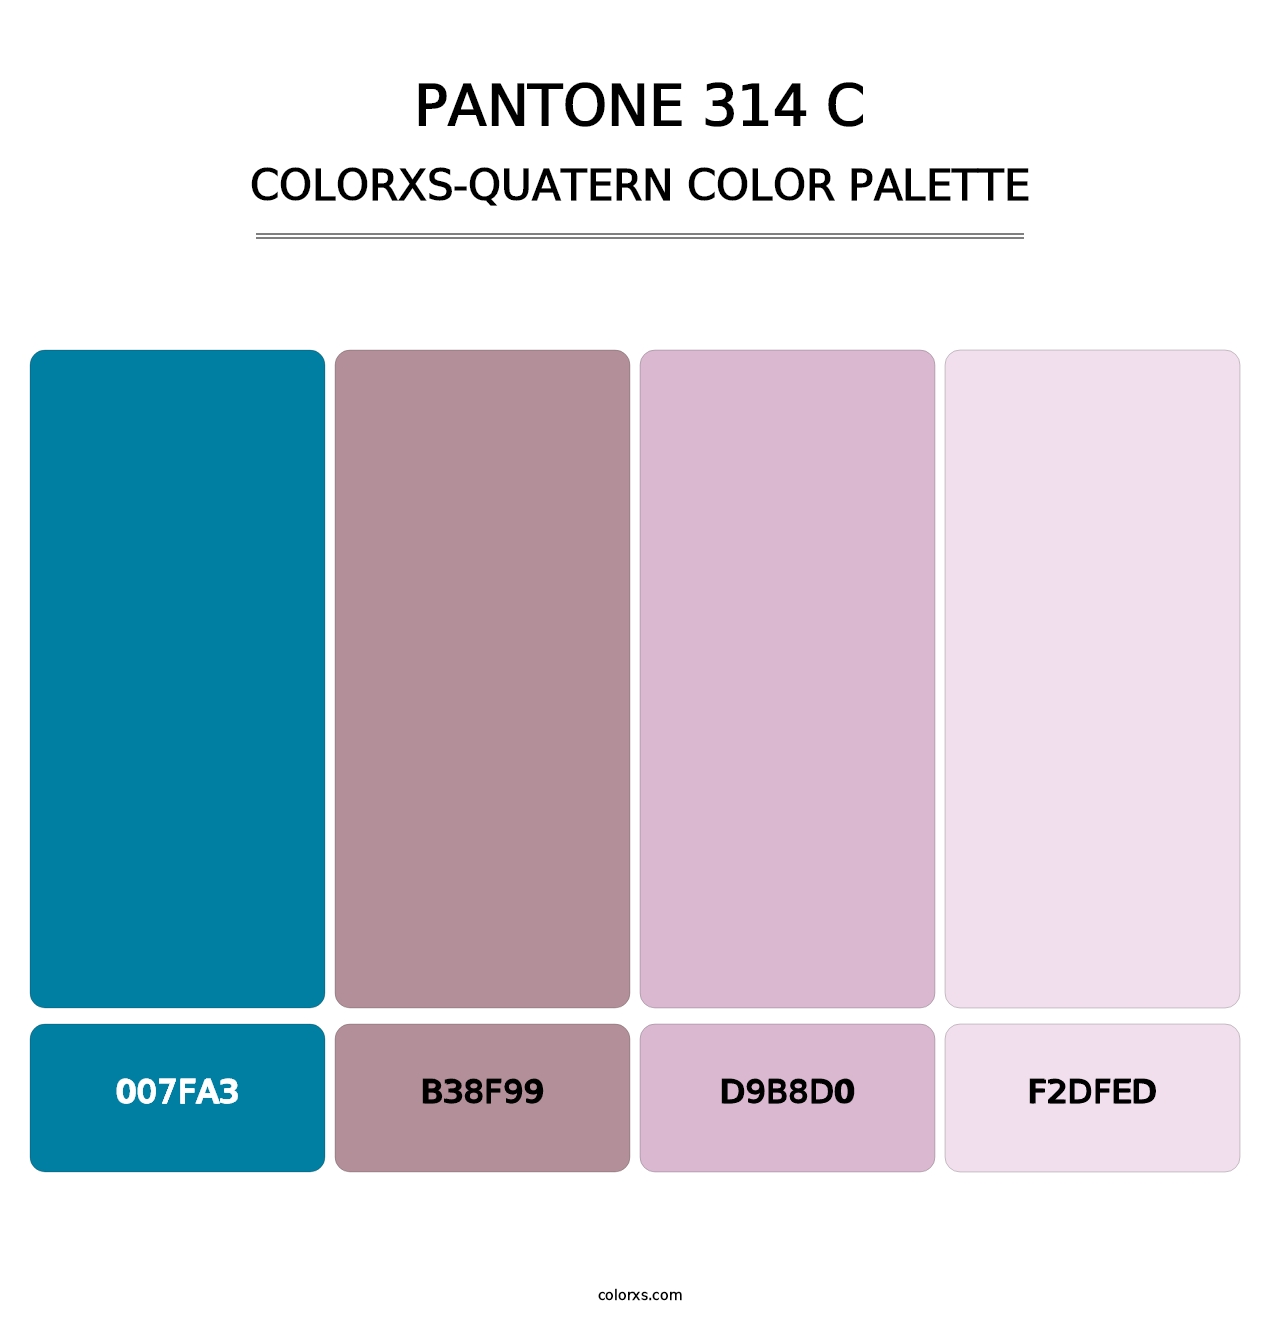 PANTONE 314 C - Colorxs Quatern Palette